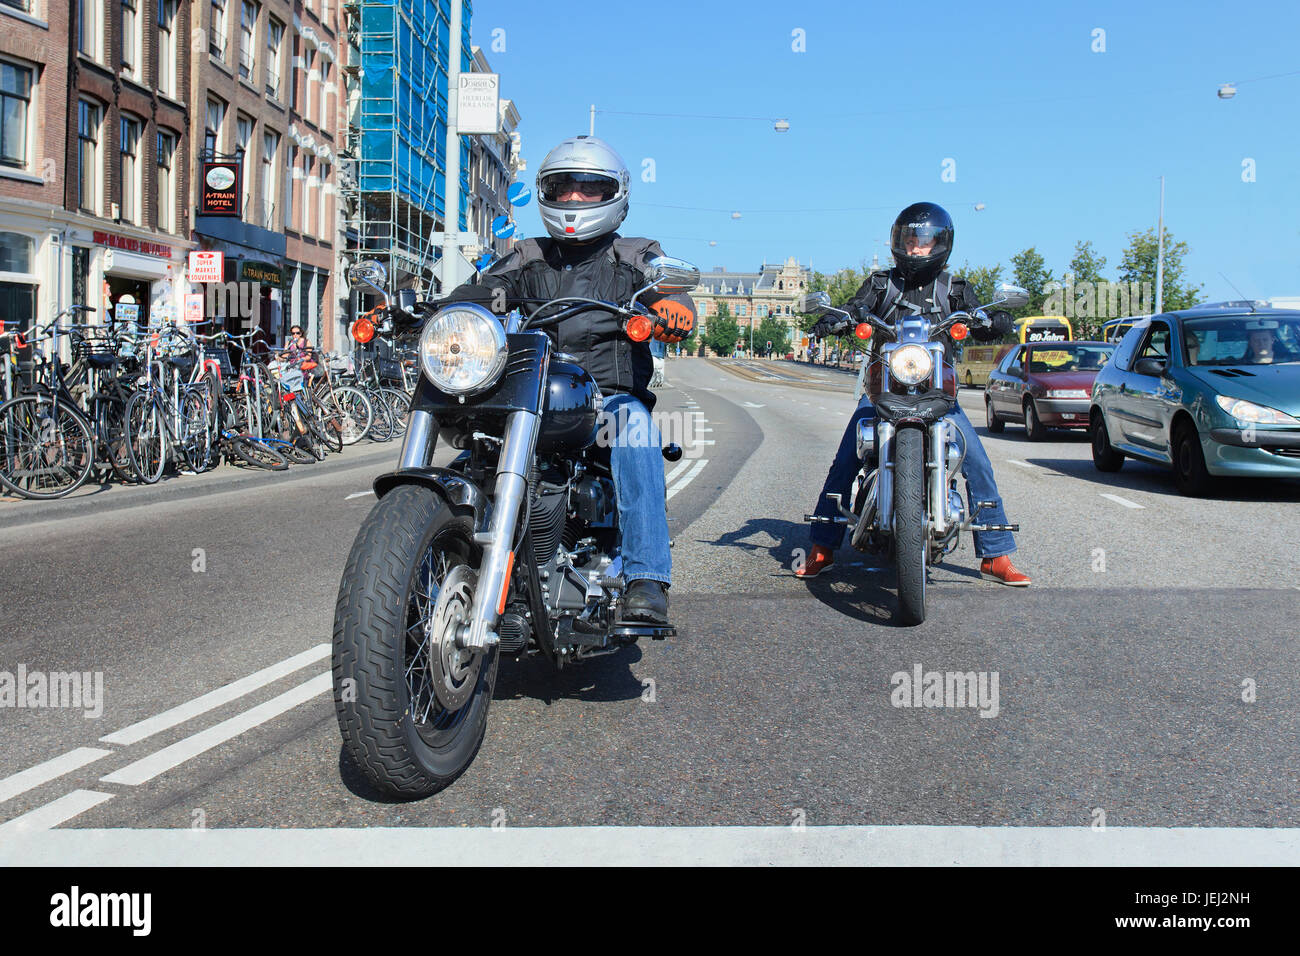 AMSTERDAM-AOÛT. 19, 2012. Harley Davidson à Amsterdam. La société vend des motos  poids lourds (plus de 750 cm3) équipées de moteurs doubles en V Photo Stock  - Alamy